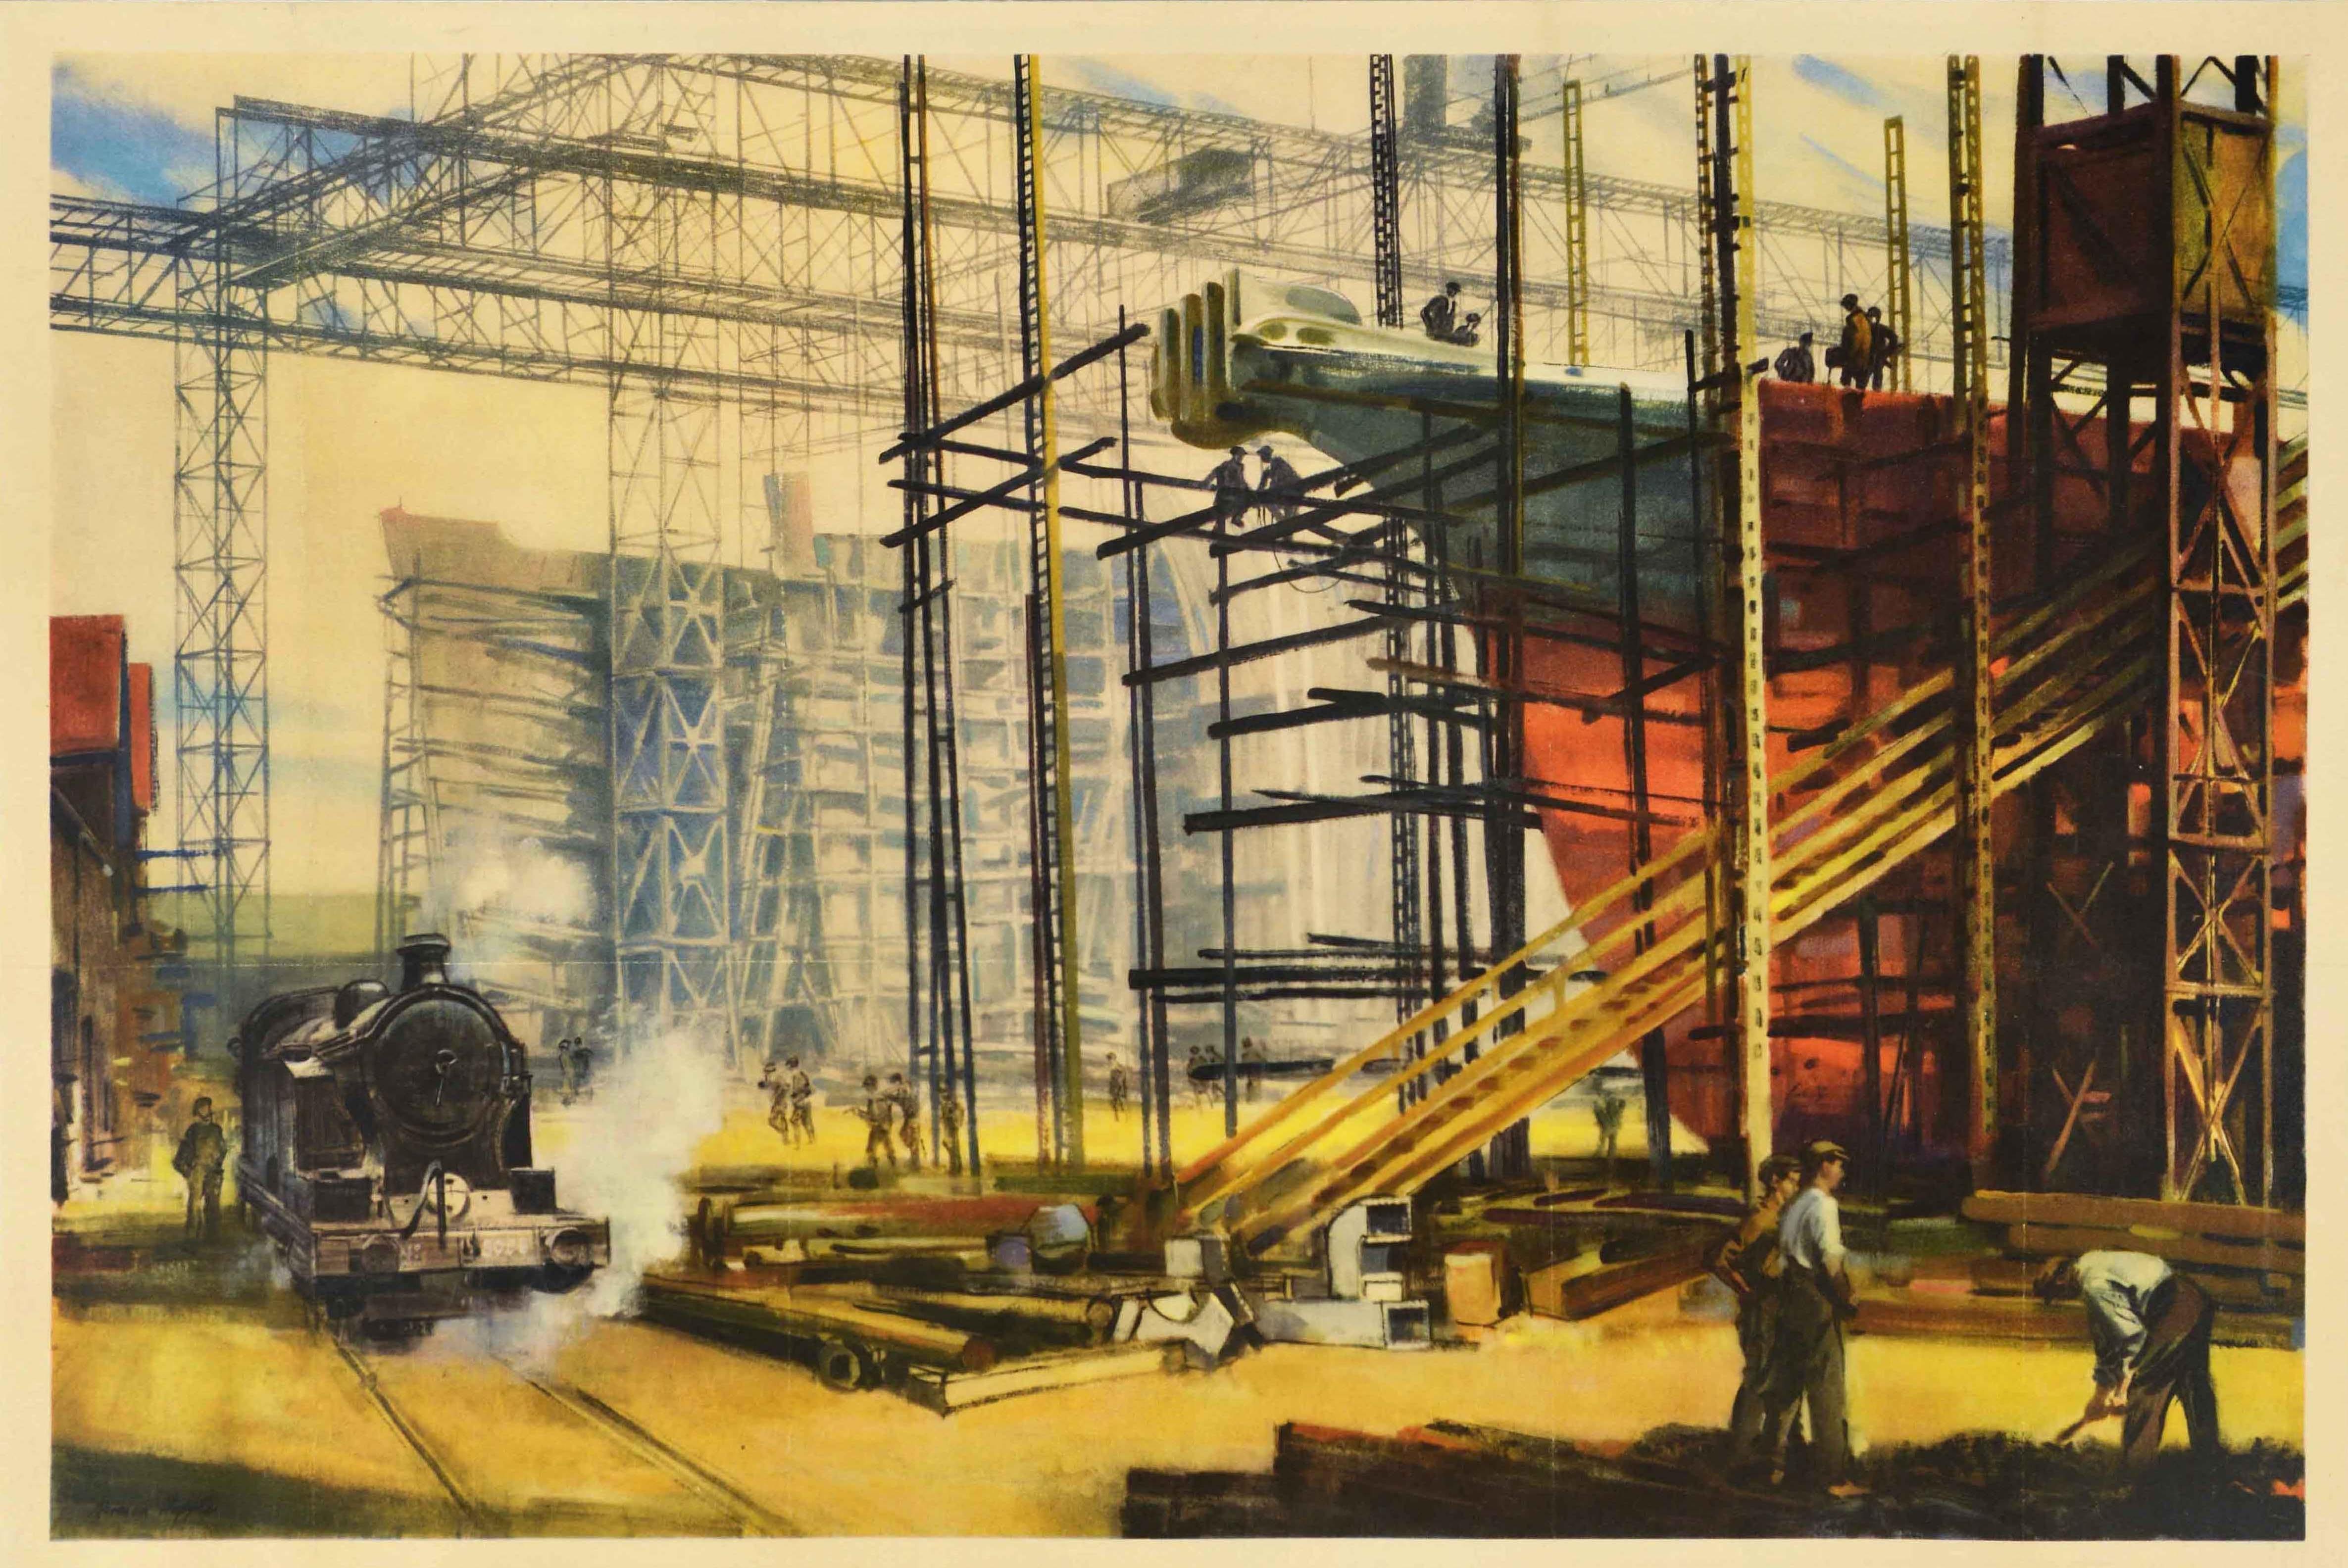 Affiche originale d'époque de British Railways - service à l'industrie de la construction navale - présentant une œuvre d'art industrielle de Norman Hepple (1908-1994) montrant des ouvriers dans un chantier naval en pleine activité avec des